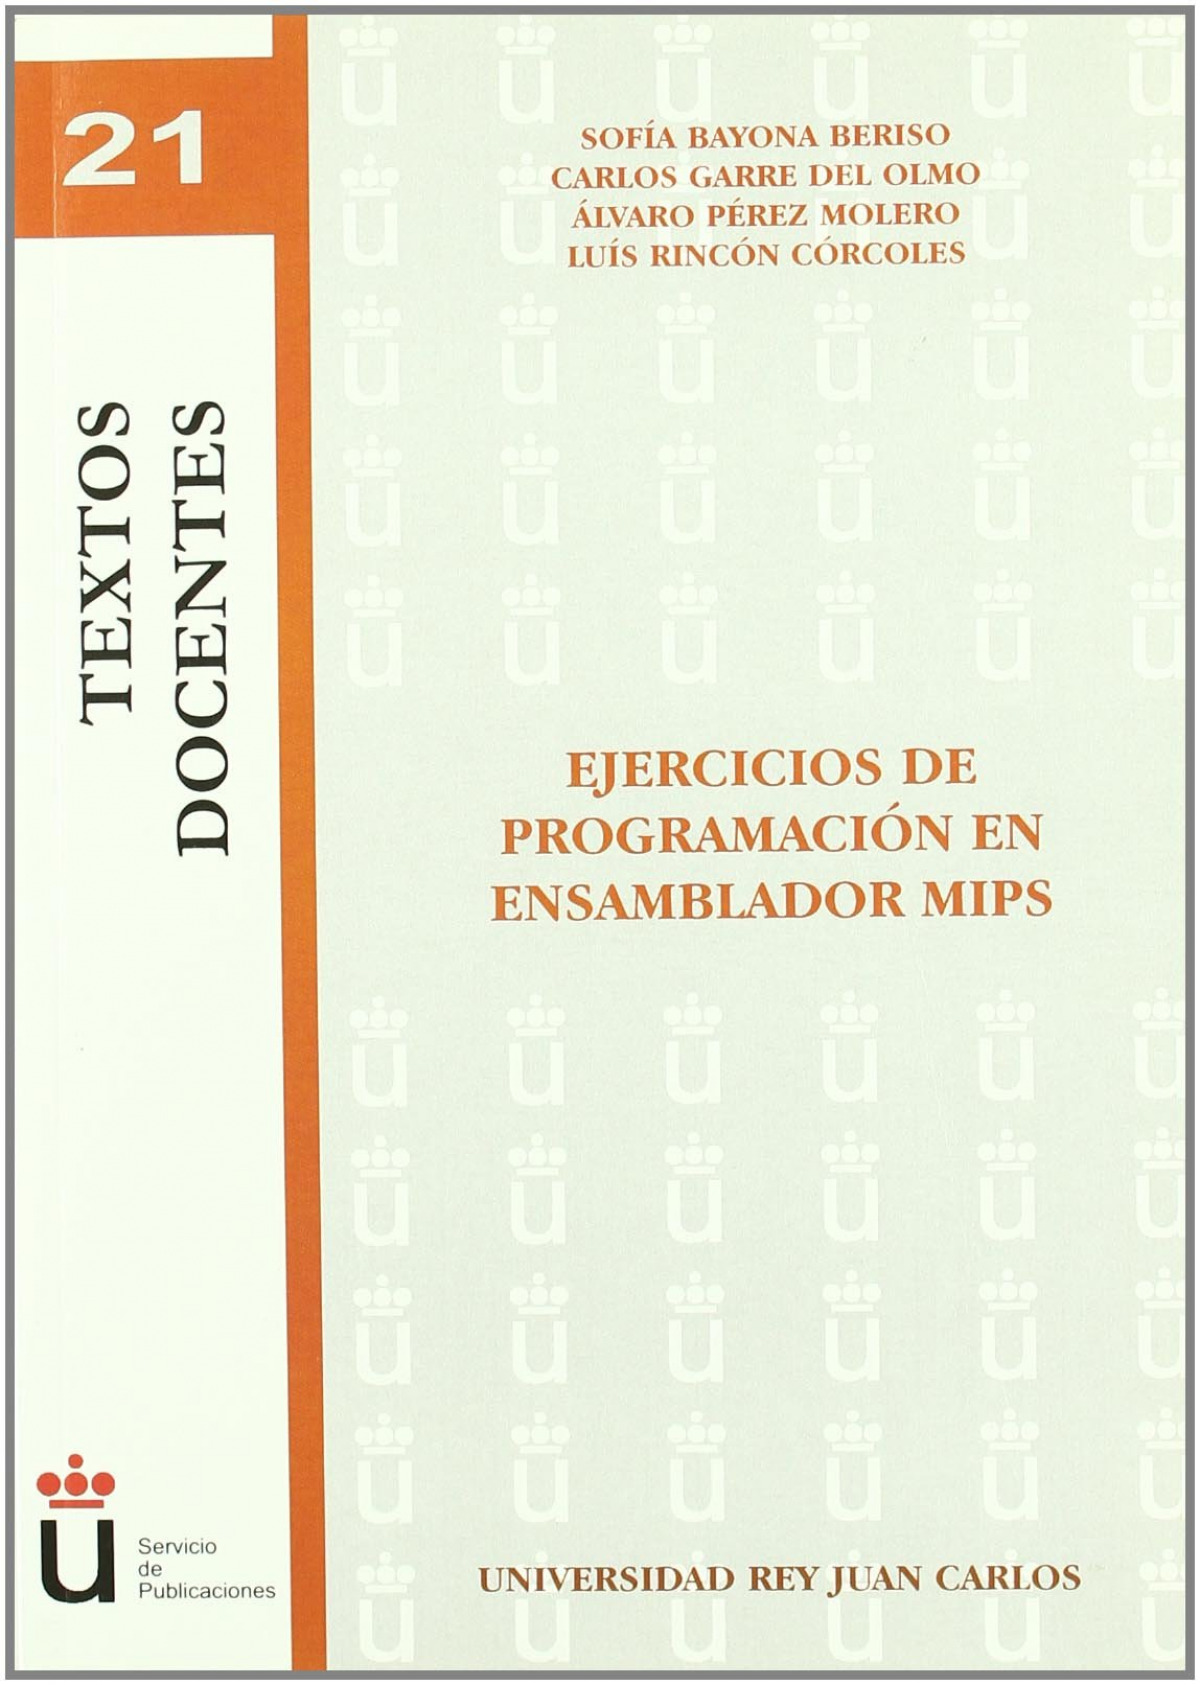 Ejercicios de programación en ensamblador MIPS - Bayona Beriso et al., Sofía